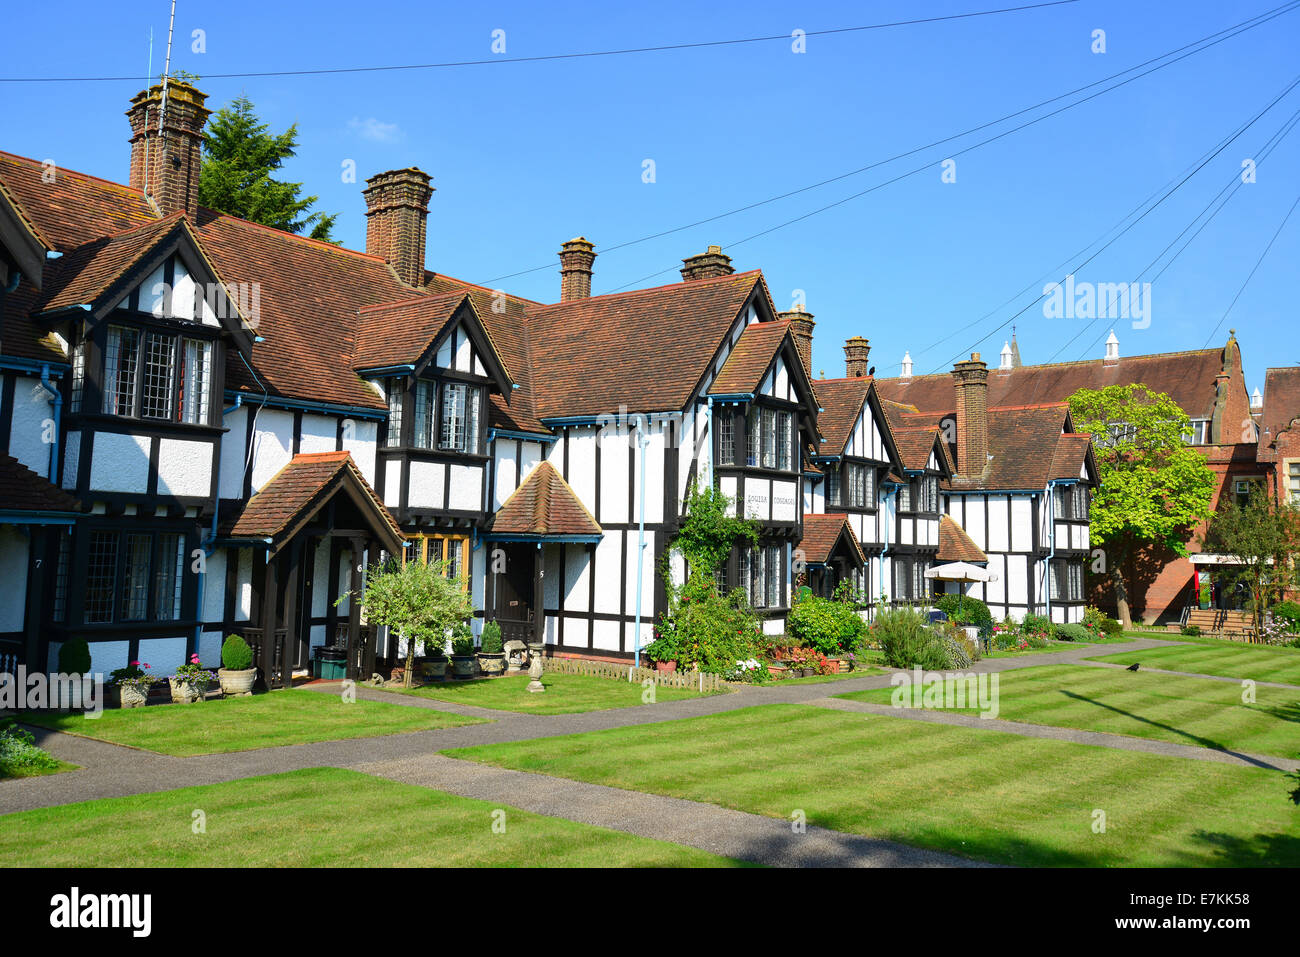 Louisa Cottages (19ème siècle hospices), Park Road, Hemel Hempstead, Hertfordshire, Angleterre, Royaume-Uni Banque D'Images